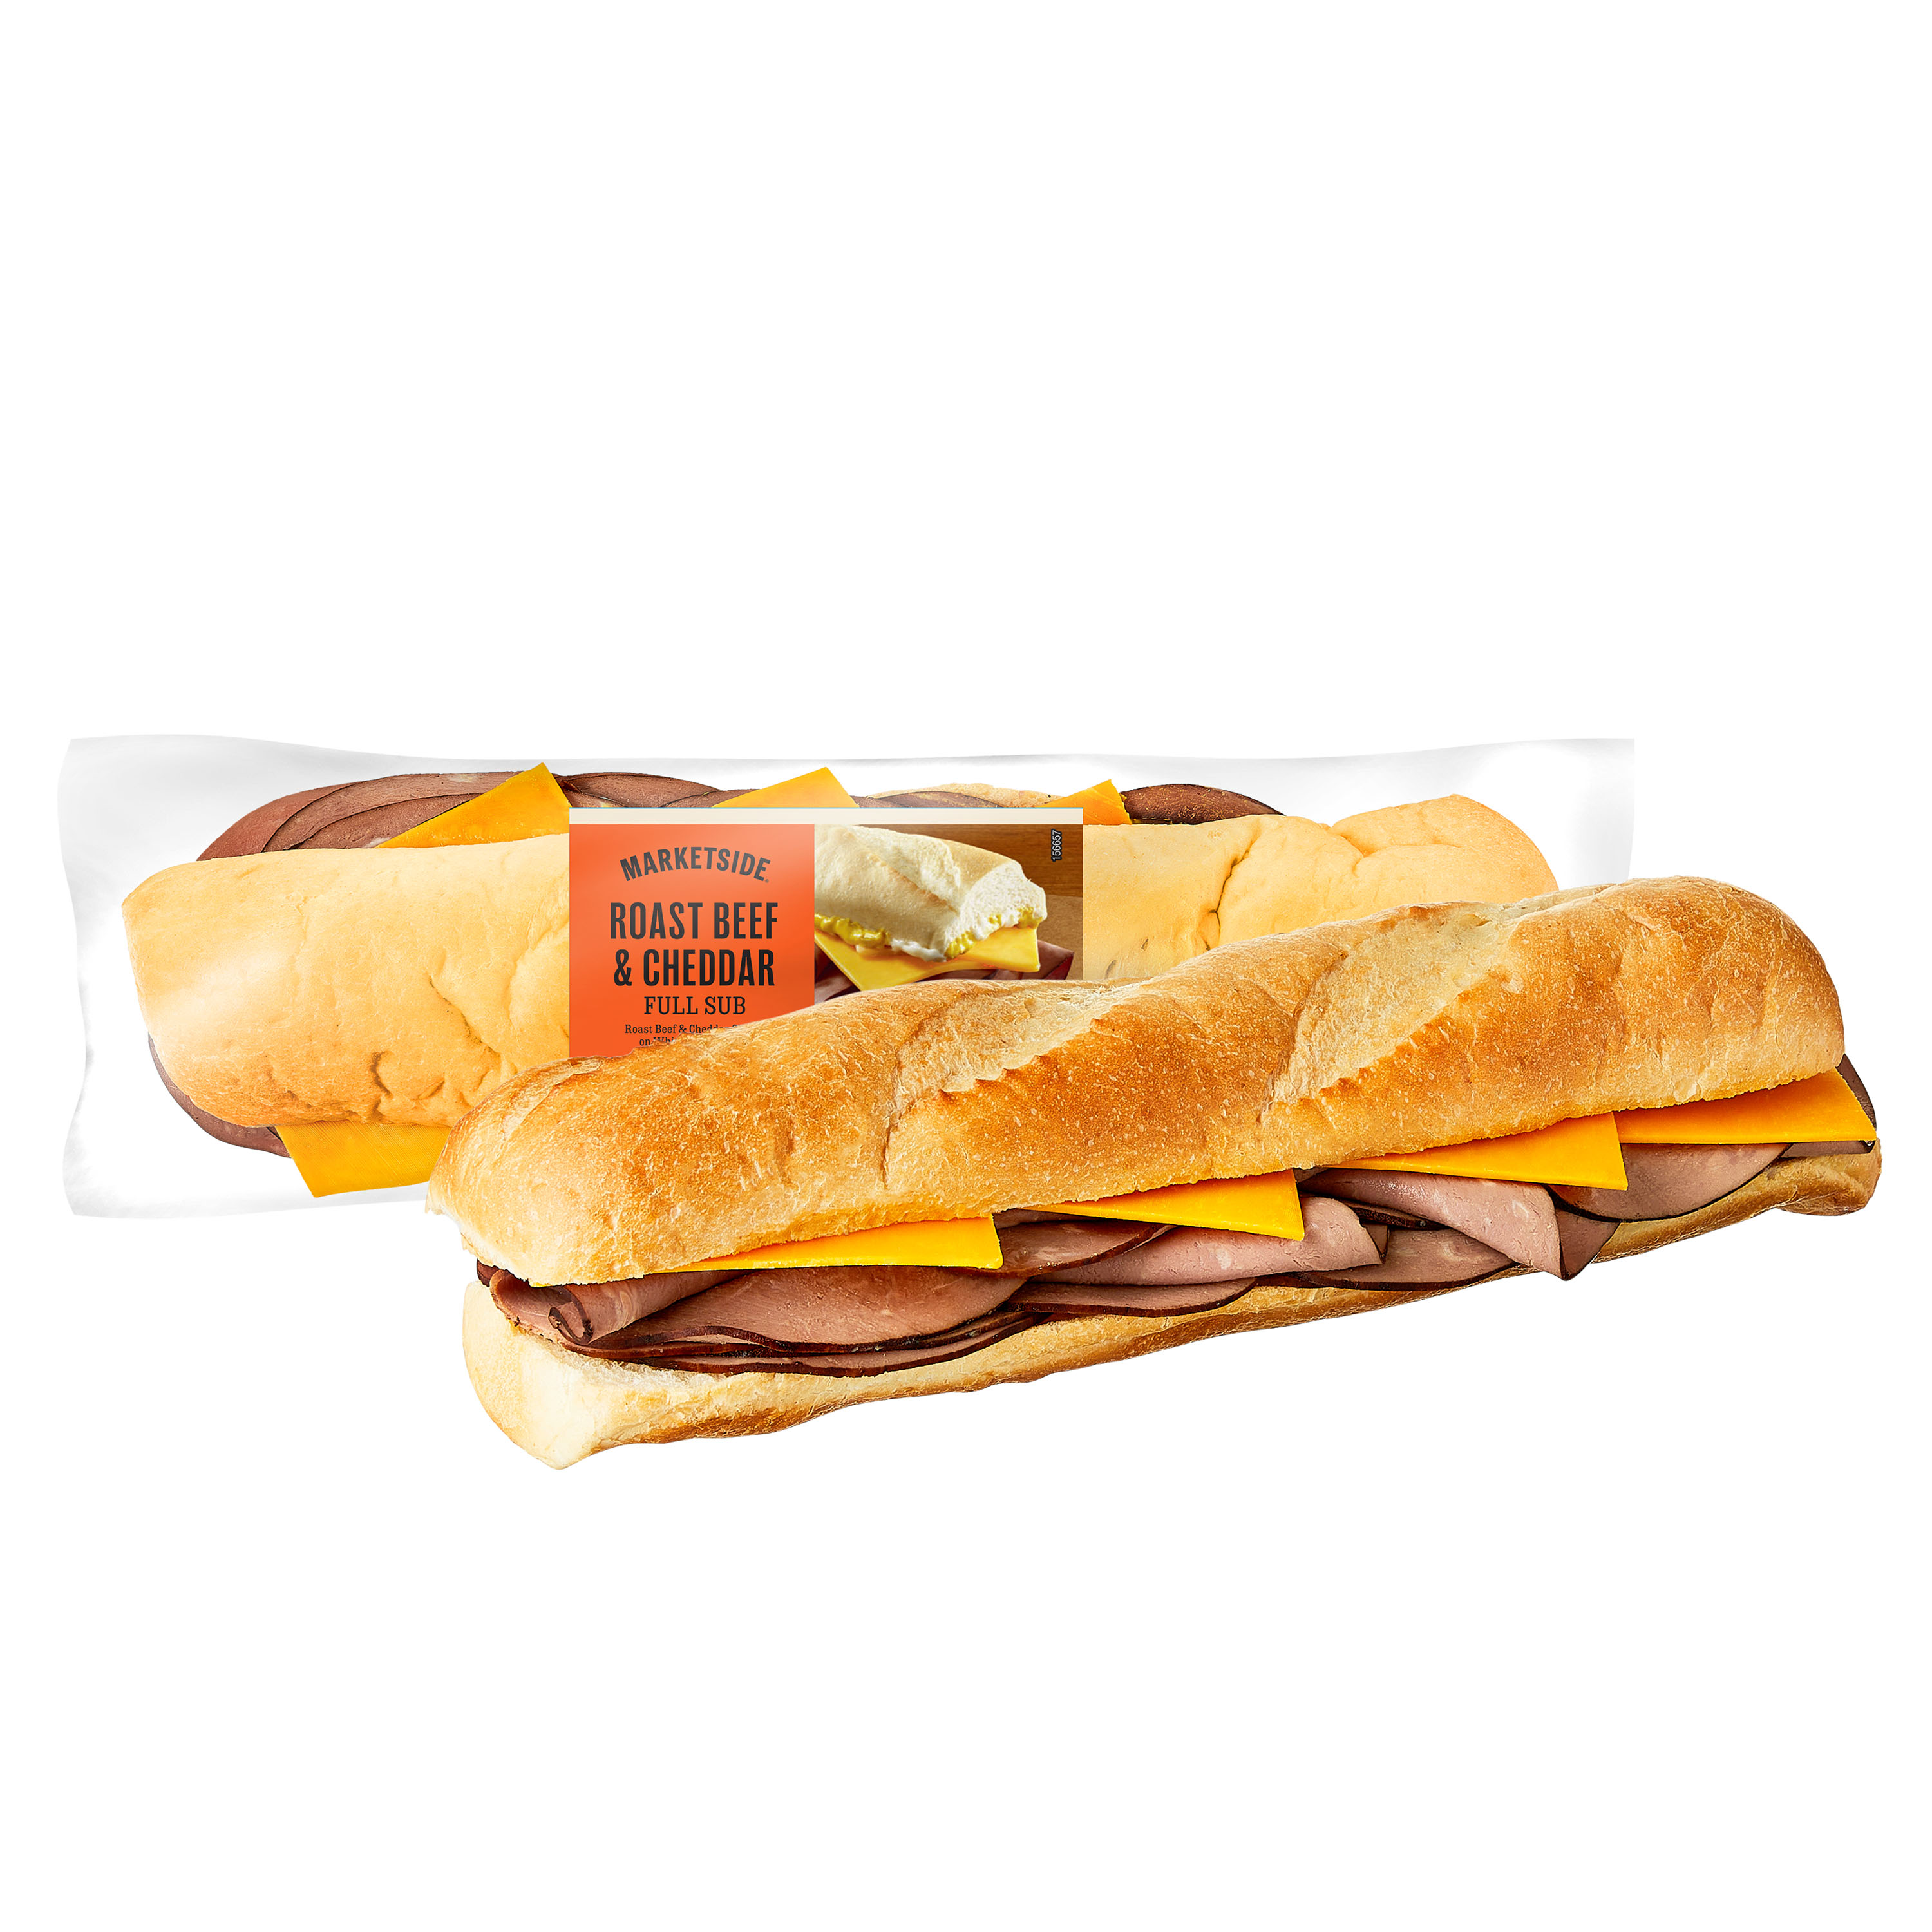 Marketside Roast Beef & Cheddar Sub Sandwich, Full, 14 oz, 1 Count (Fresh) - image 2 of 7